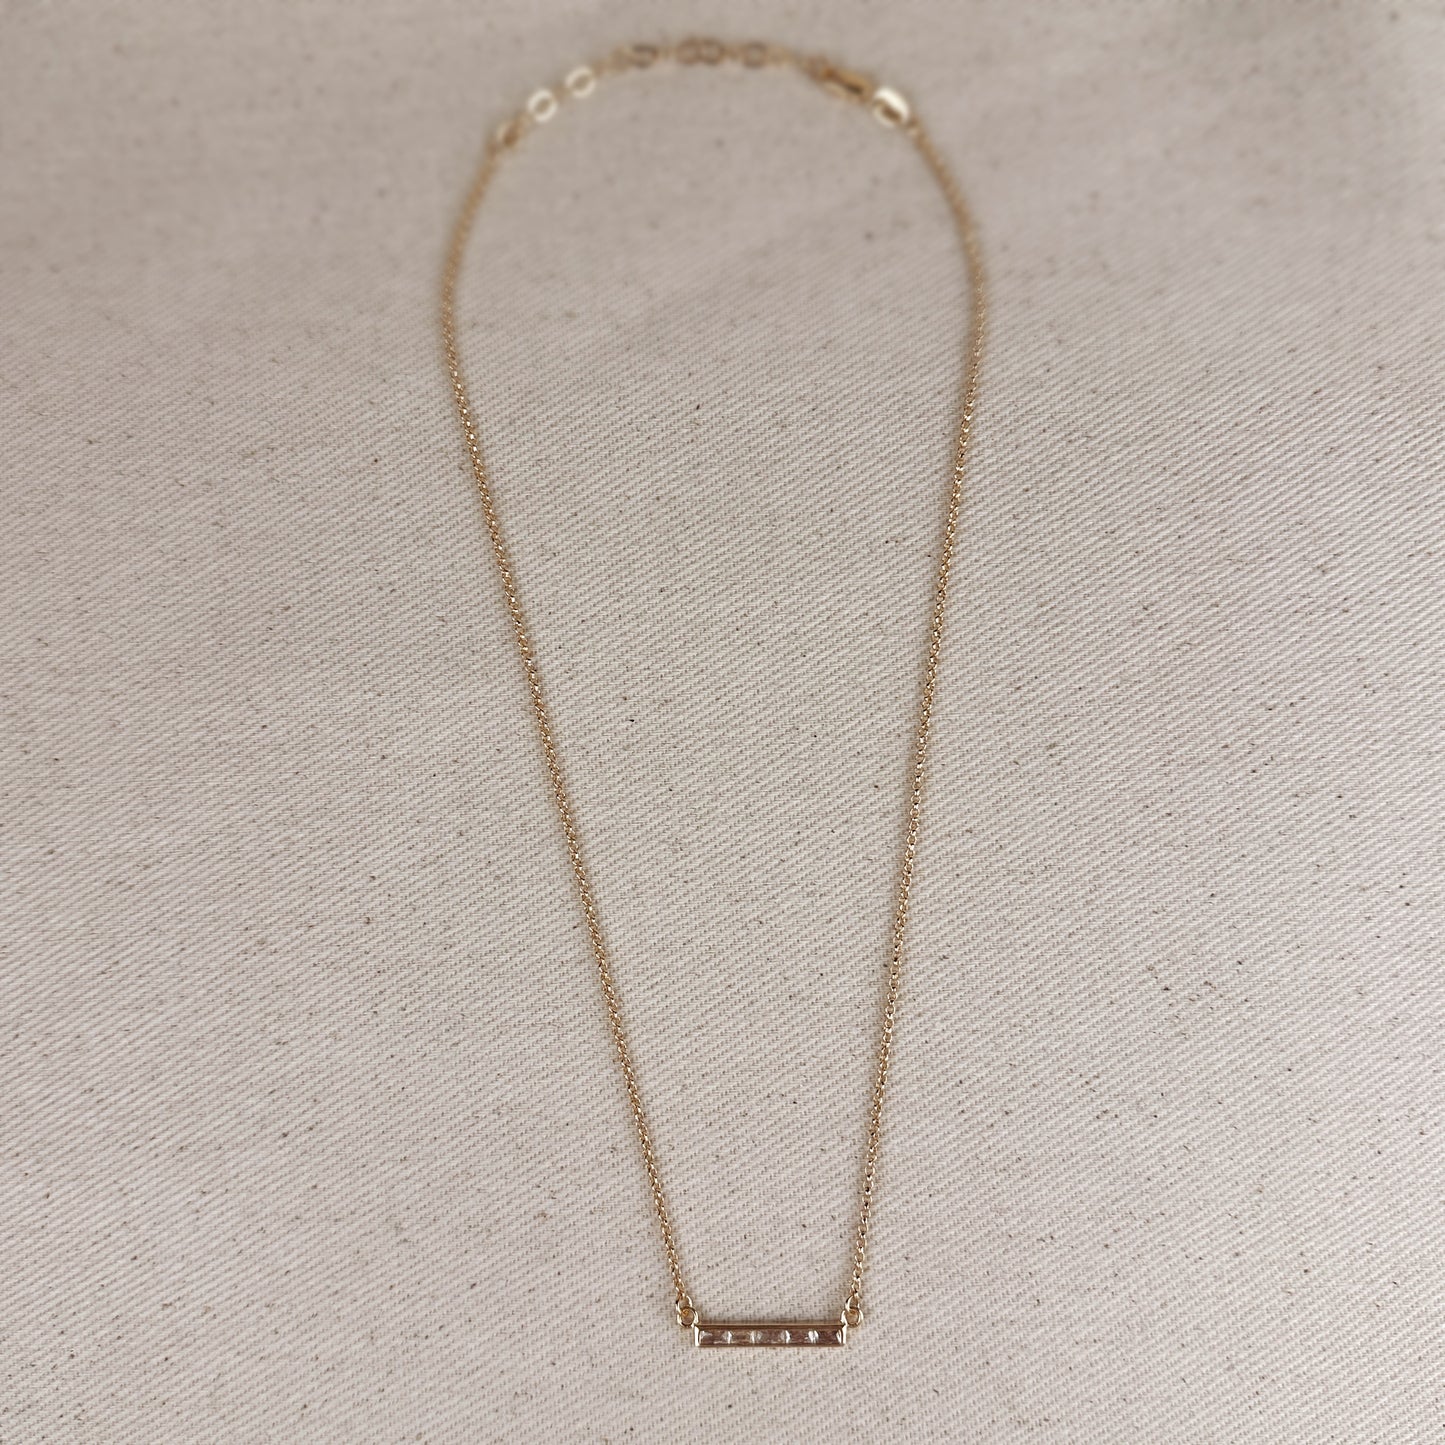 18k Gold Filled CZ Bar Necklace